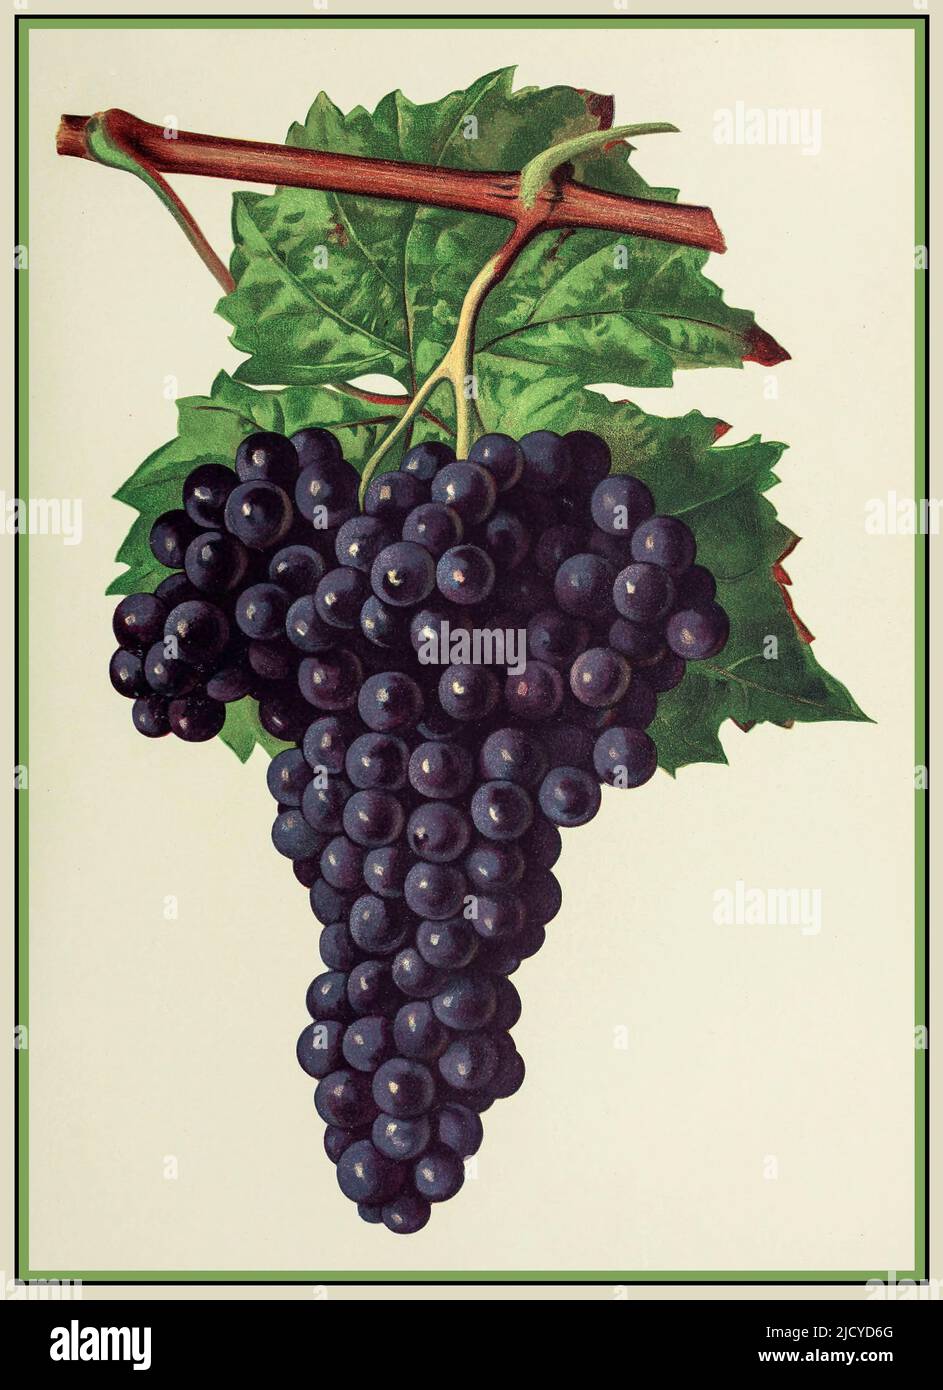 CHATUS Reife Traube Chatus Weintrauben Lithographie Illustration Chatus ist eine schwarze Traubenvariante, die ausschließlich für den Prozess der Rotweinherstellung verwendet wird. Chatus ist eine Rotweinrebe aus Ardèche. Diese Traube, die auch als Bournin (im piemontesischen Dialekt) oder Nebbiolo di dronero bekannt ist, ist je nach Anbauort mit verschiedenen Synonymen bekannt. Diese Traube trägt auch den Namen Brunetta oder Scarlattinin in der Region Val Di Susa oder Branchet in der Region Canavese. Italien Stockfoto